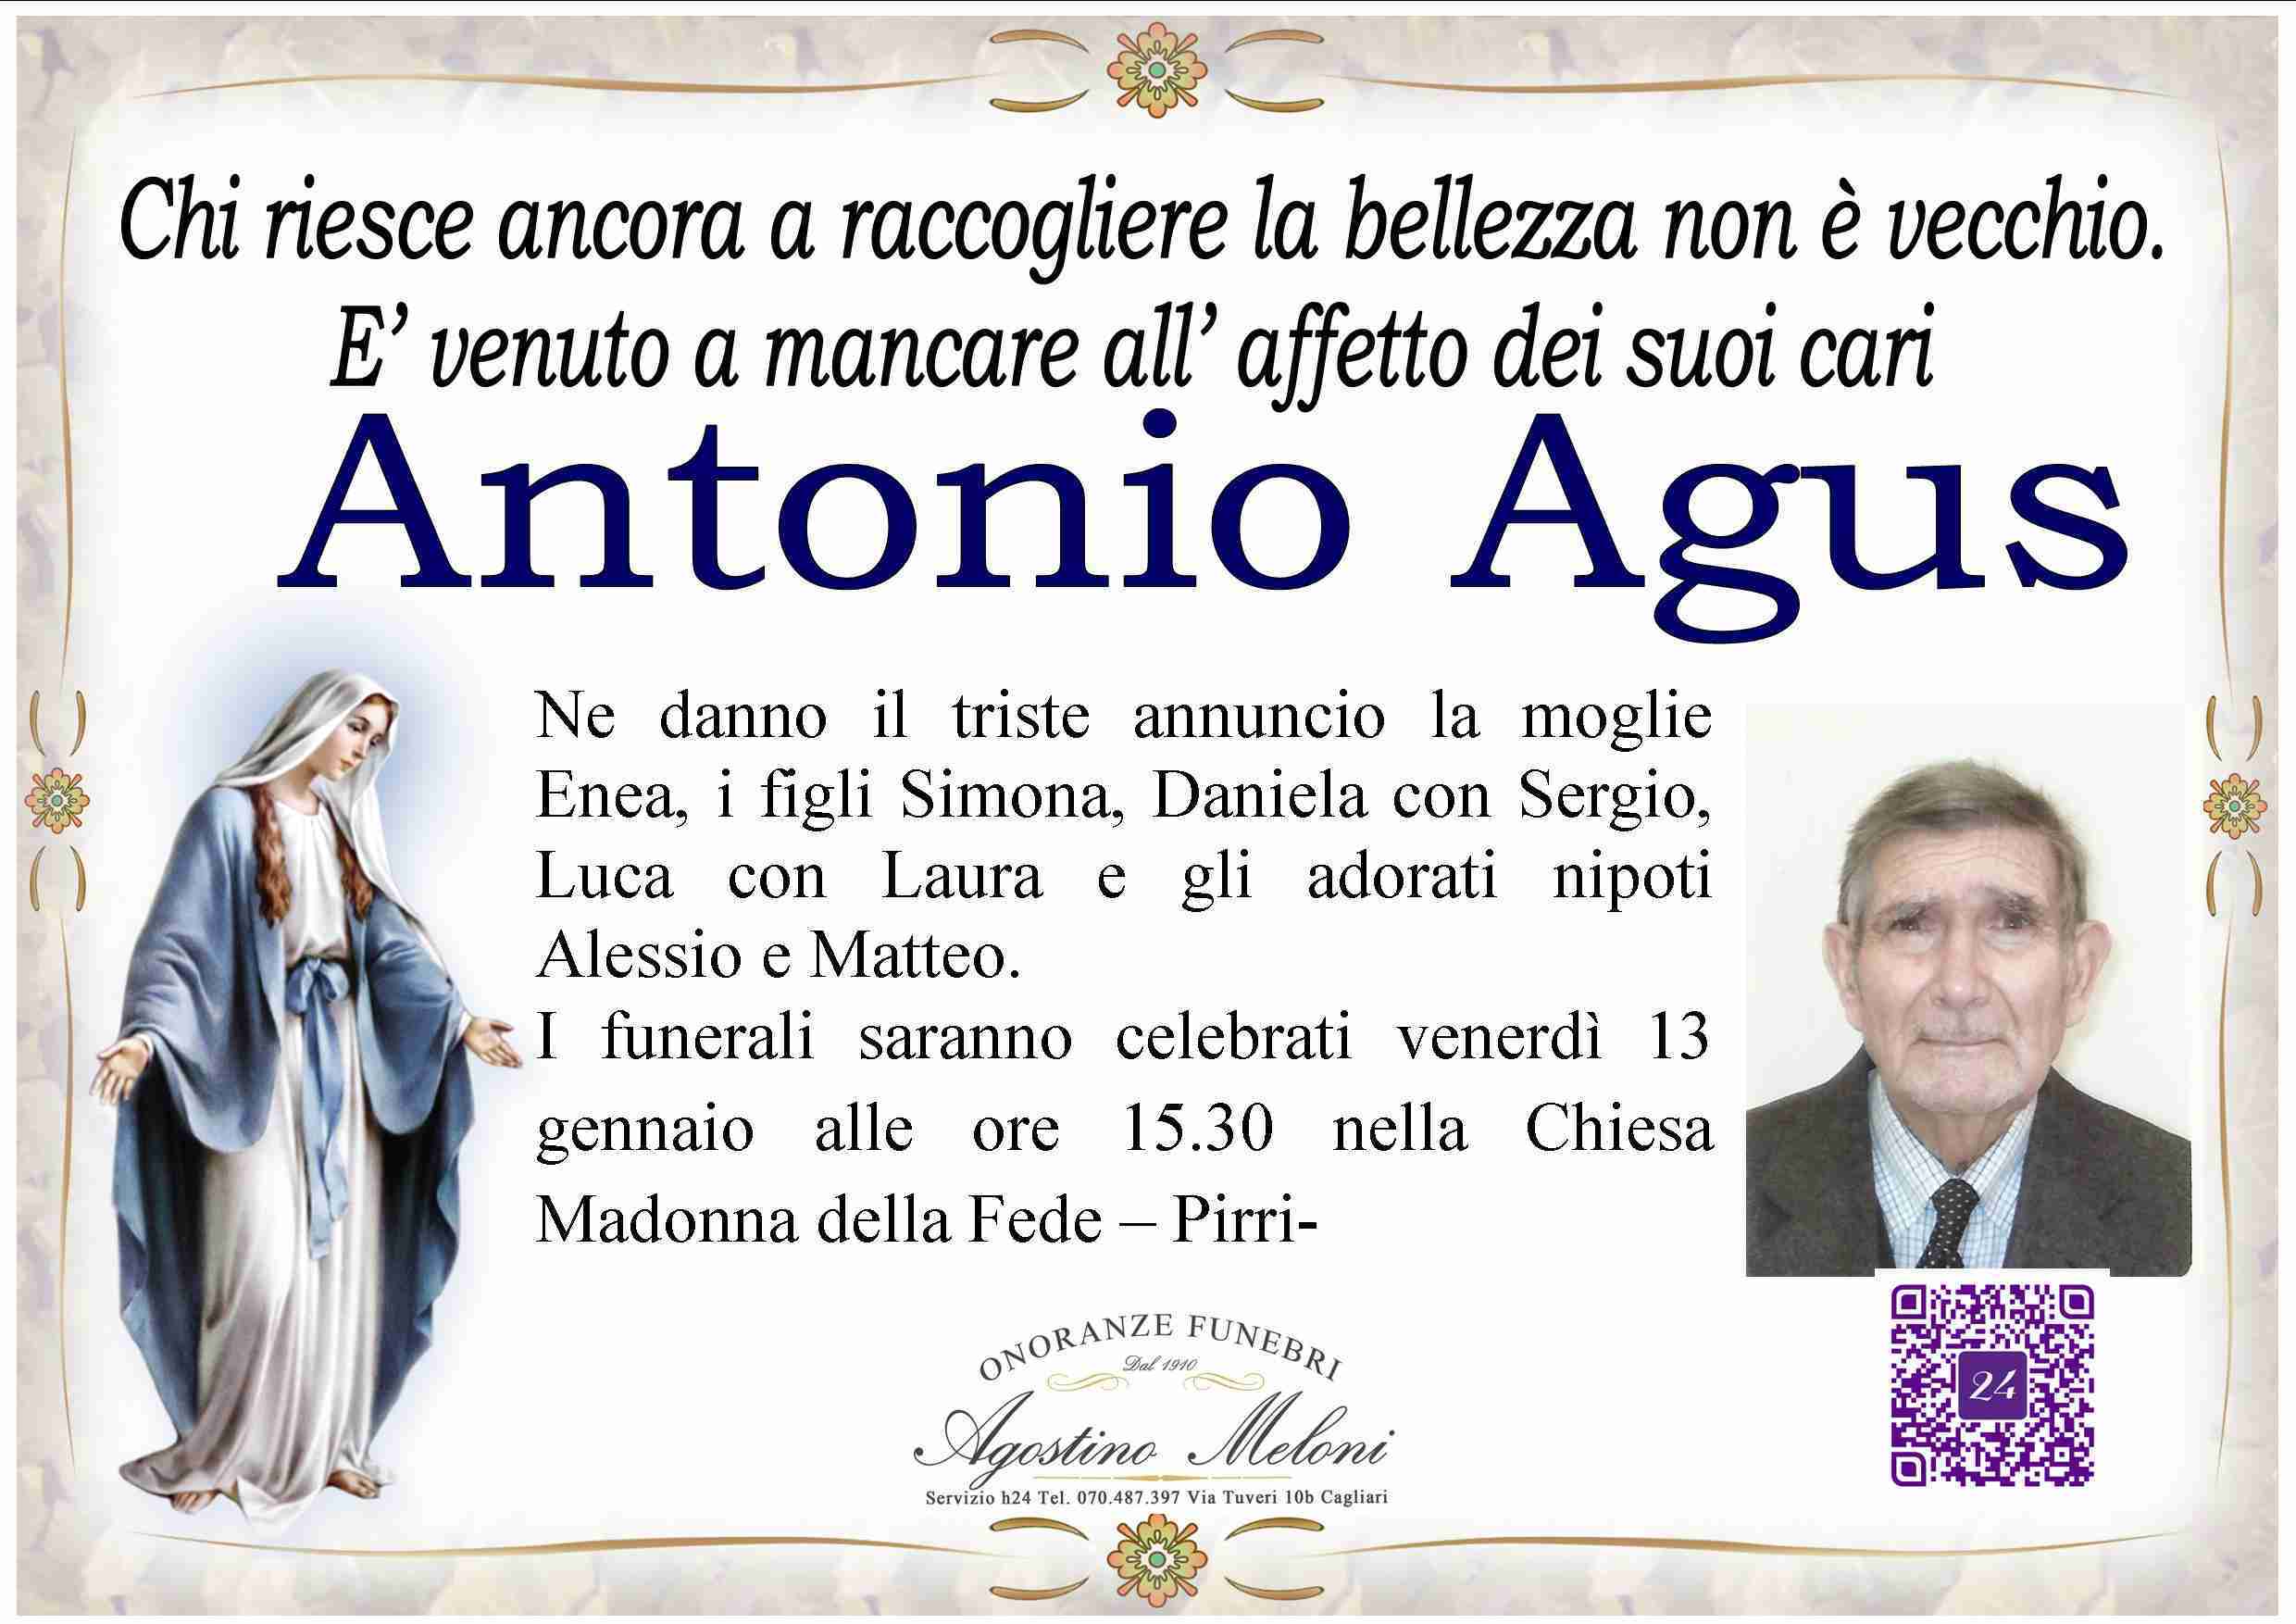 Antonio Agus